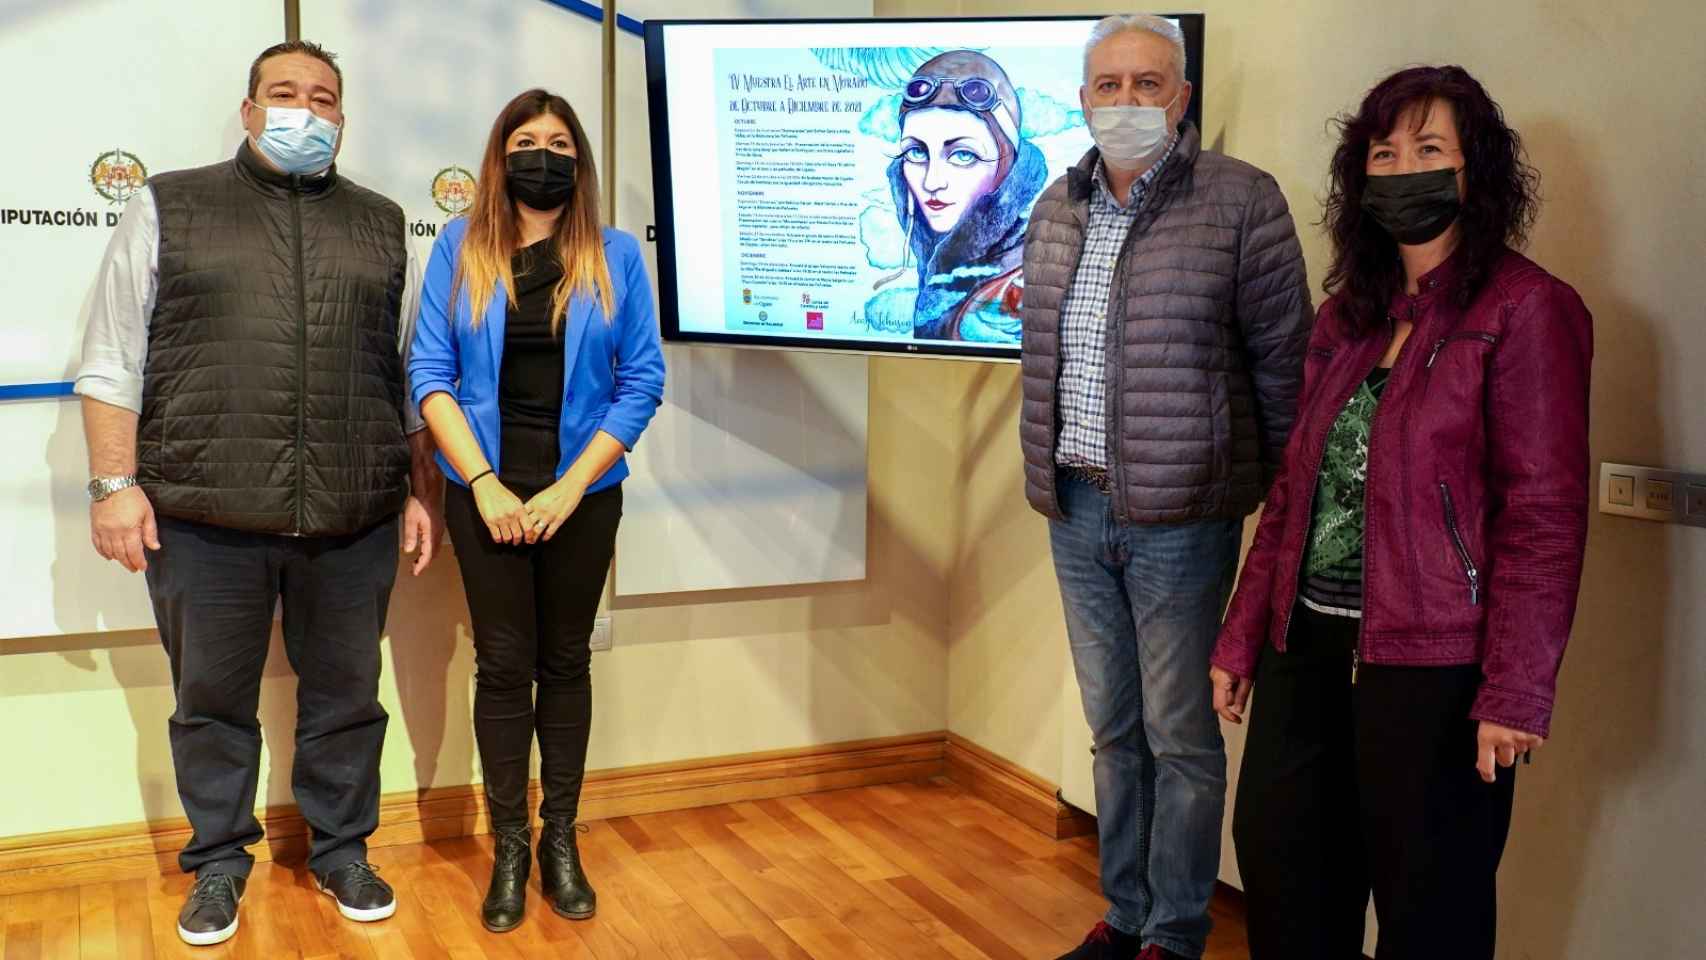 Presentación de Arte en Morado en la Diputación de Valladolid